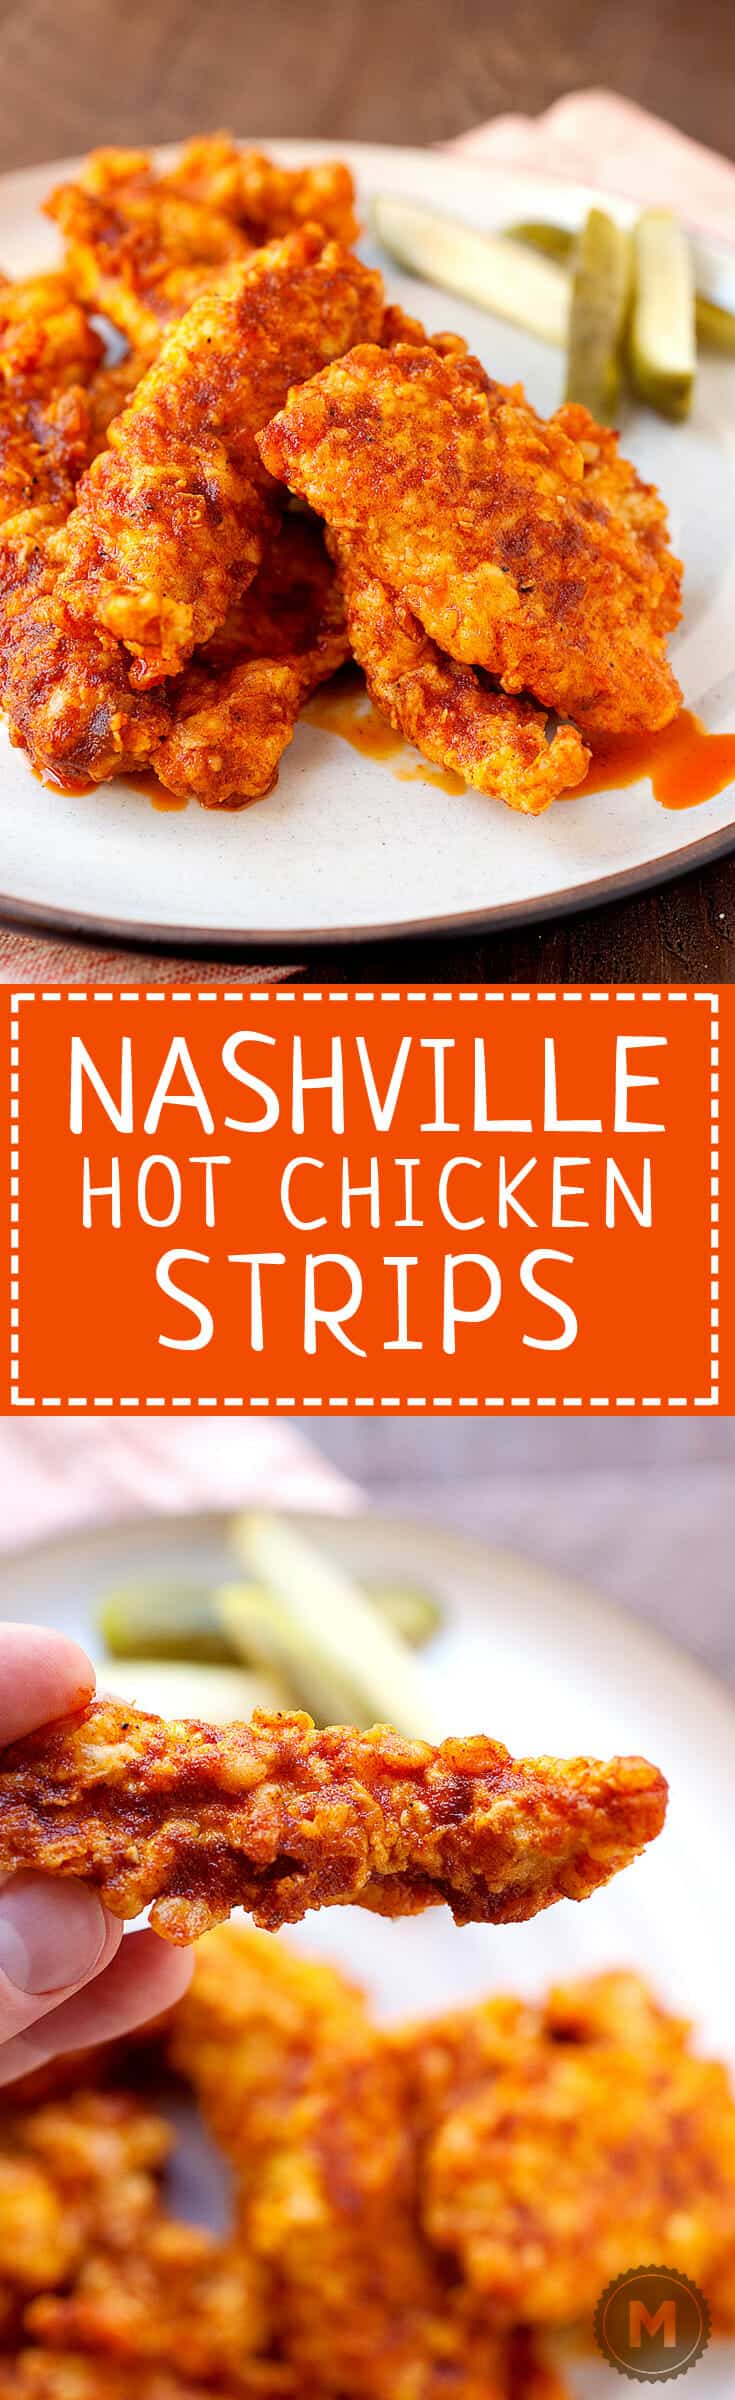 Nashville Hot Chicken Strips